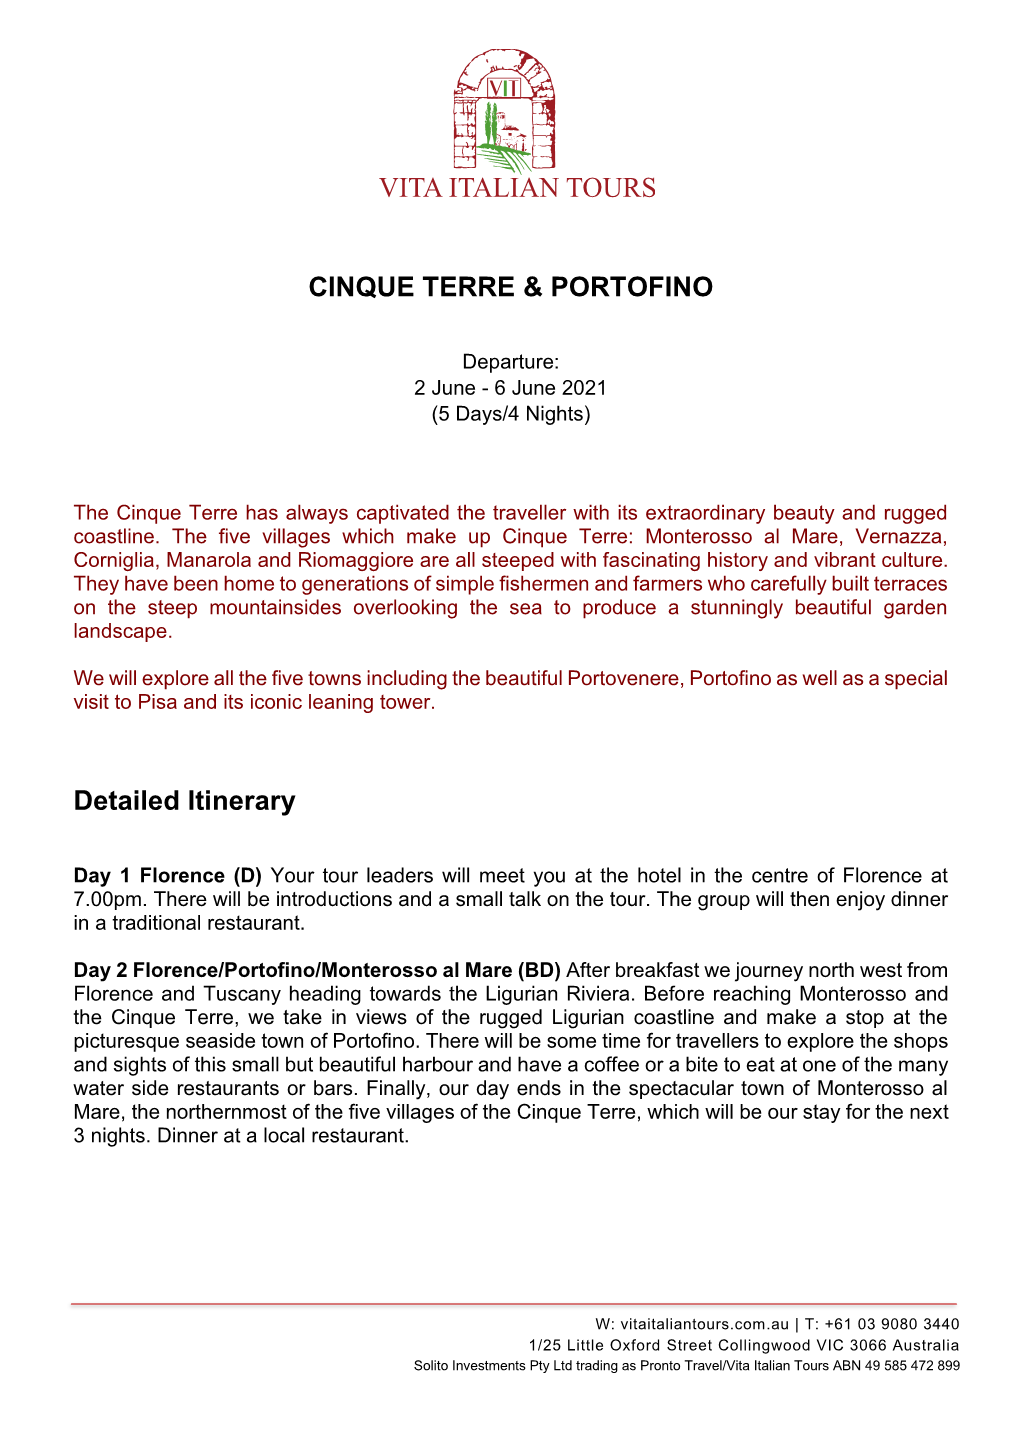 CINQUE TERRE & PORTOFINO Detailed Itinerary